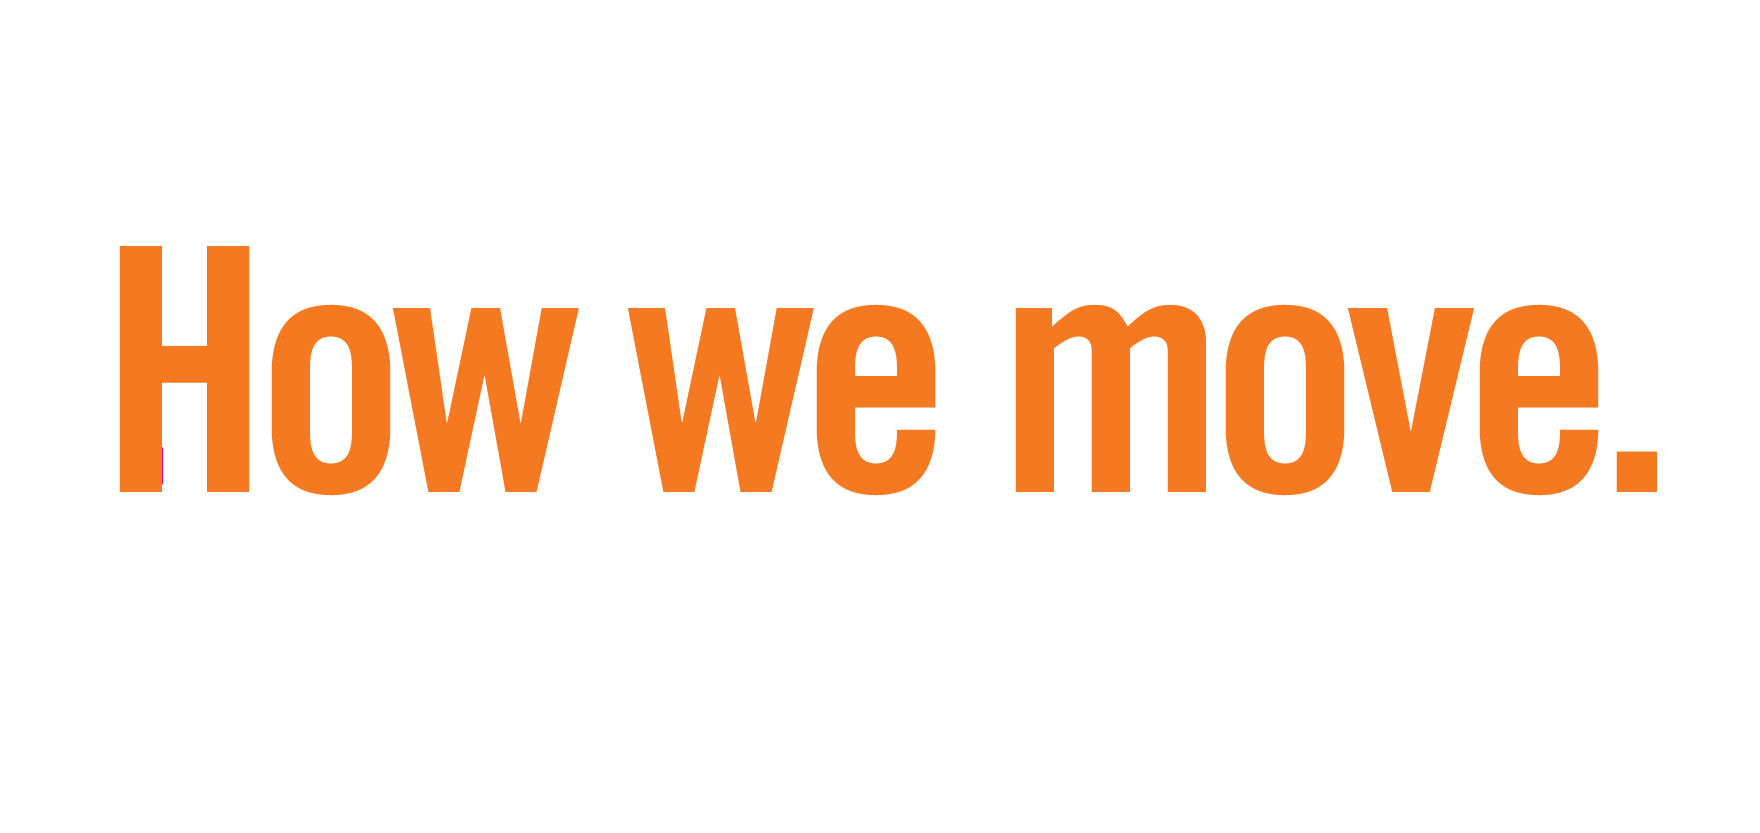 phrase in orange text: how we move.